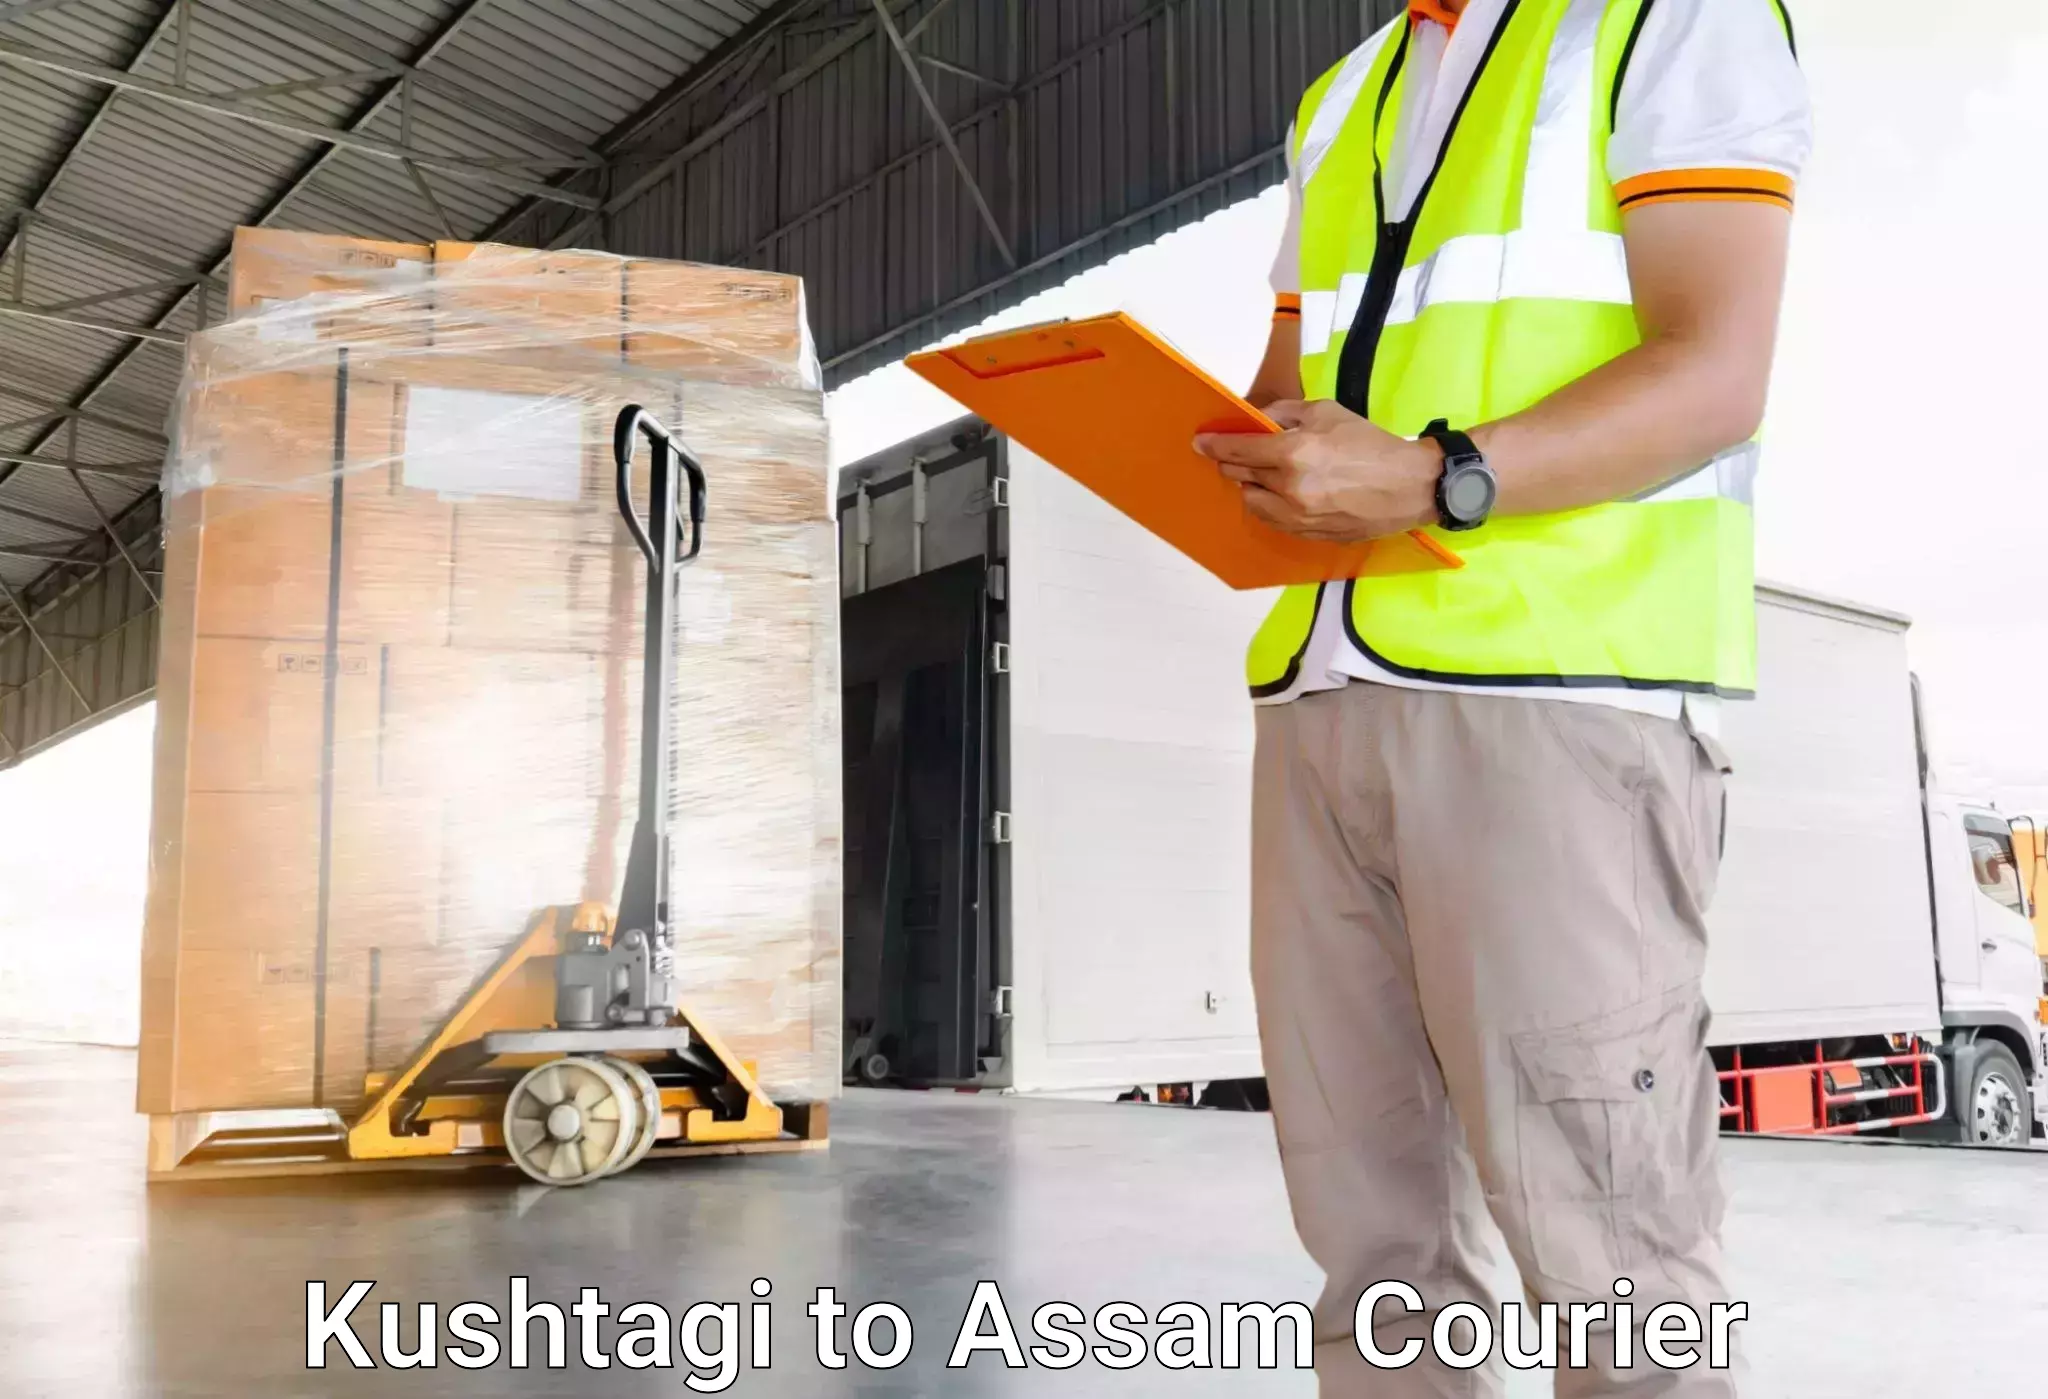 Luggage transport logistics in Kushtagi to Moranhat